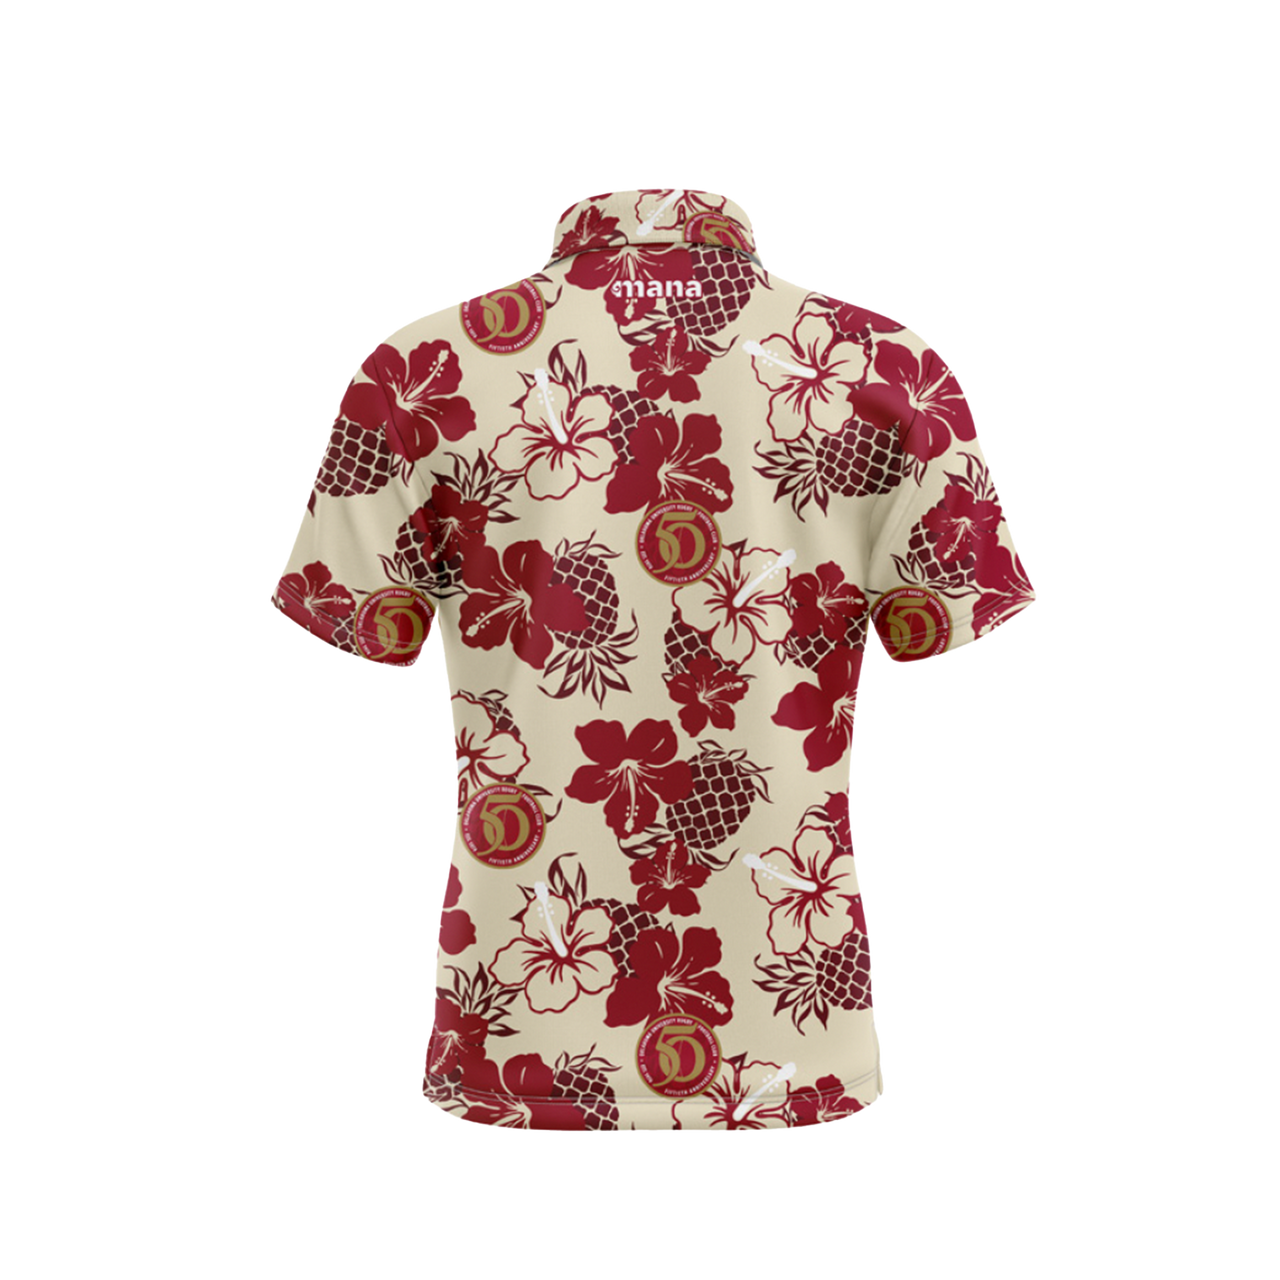 Oklahoma University Hawaiian Shirt